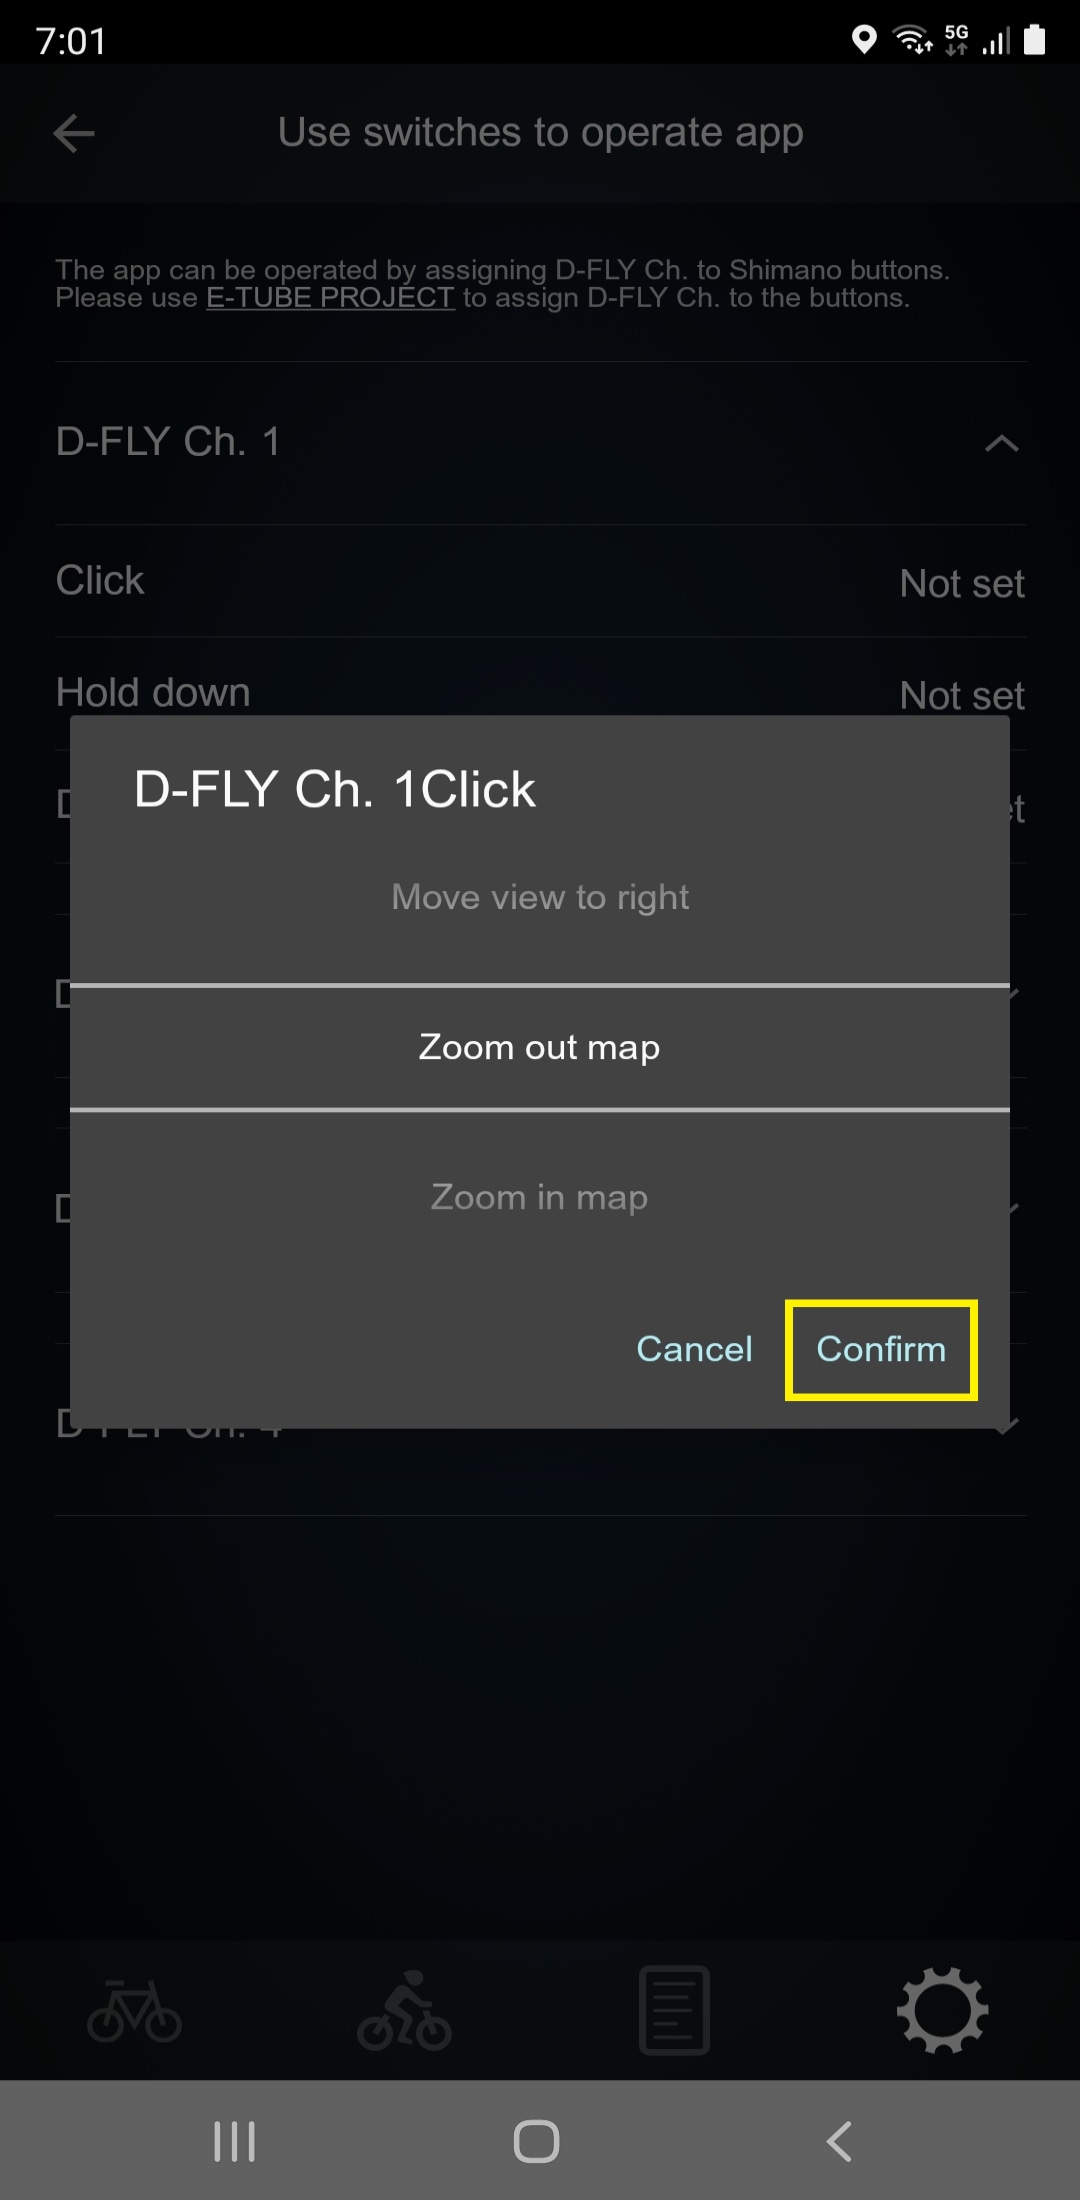 Sélectionnez une opération de l'application puis appuyez sur Confirmer pour terminer la configuration. Essayez de faire un zoom avant ou arrière sur l'écran de la carte à l'aide de l'interrupteur.